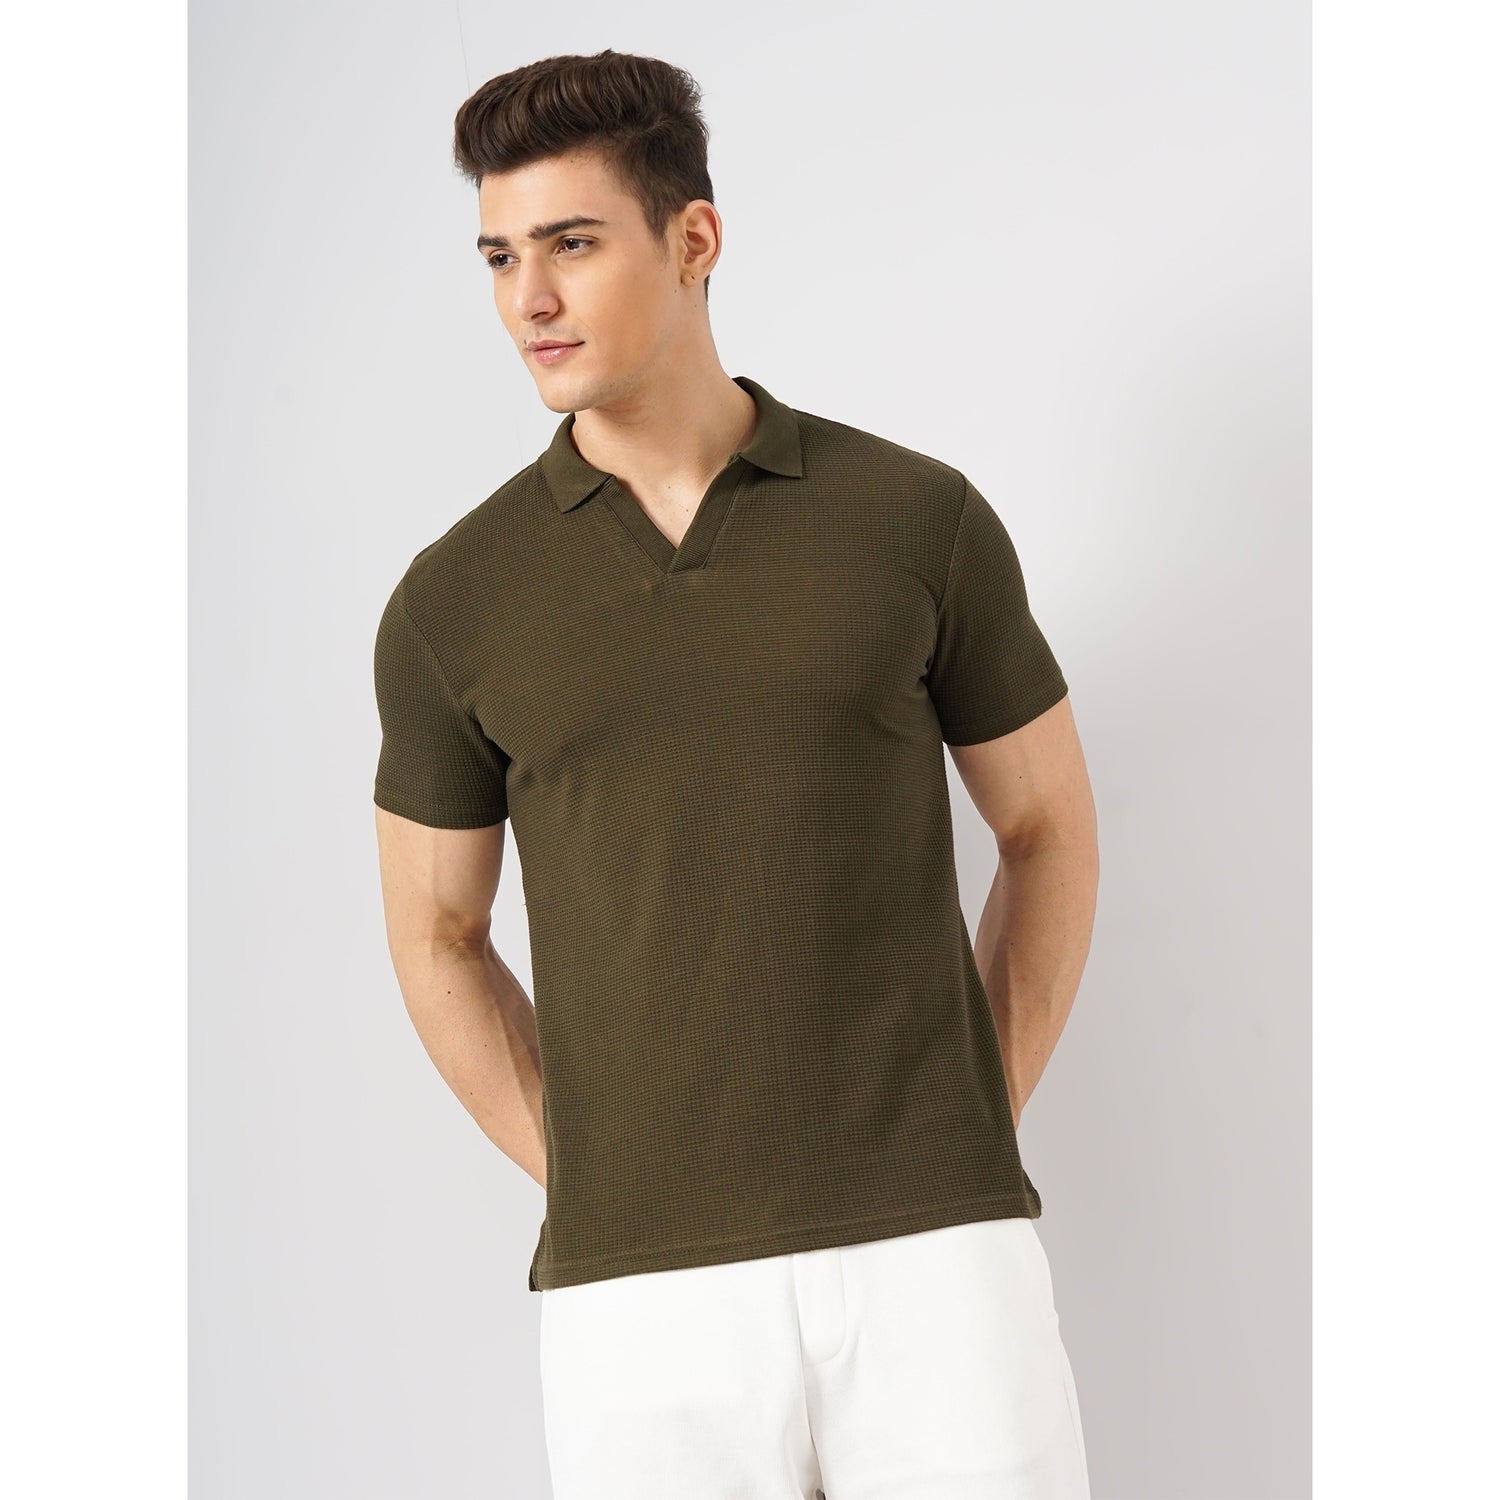 Men Olive Shirt Collar Solid Regular Fit Cotton Structured Tshirts (GEWAFFLEIN)